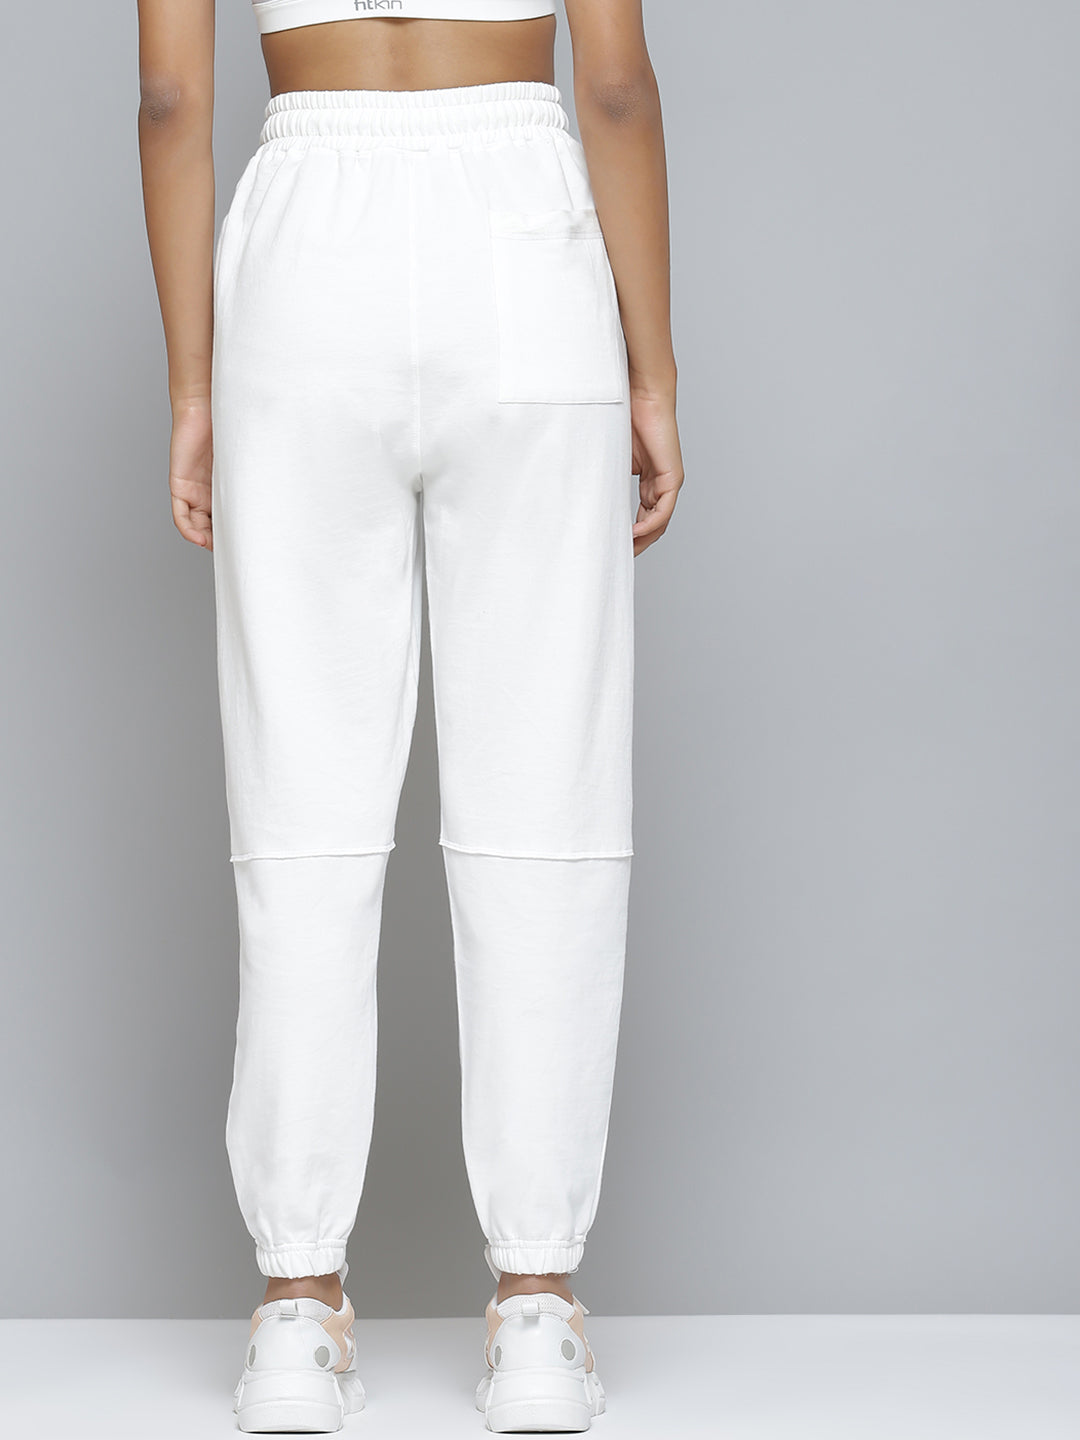 Buy Girls White Fleece Cool Girl Foil Print Joggers Online at Sassafras